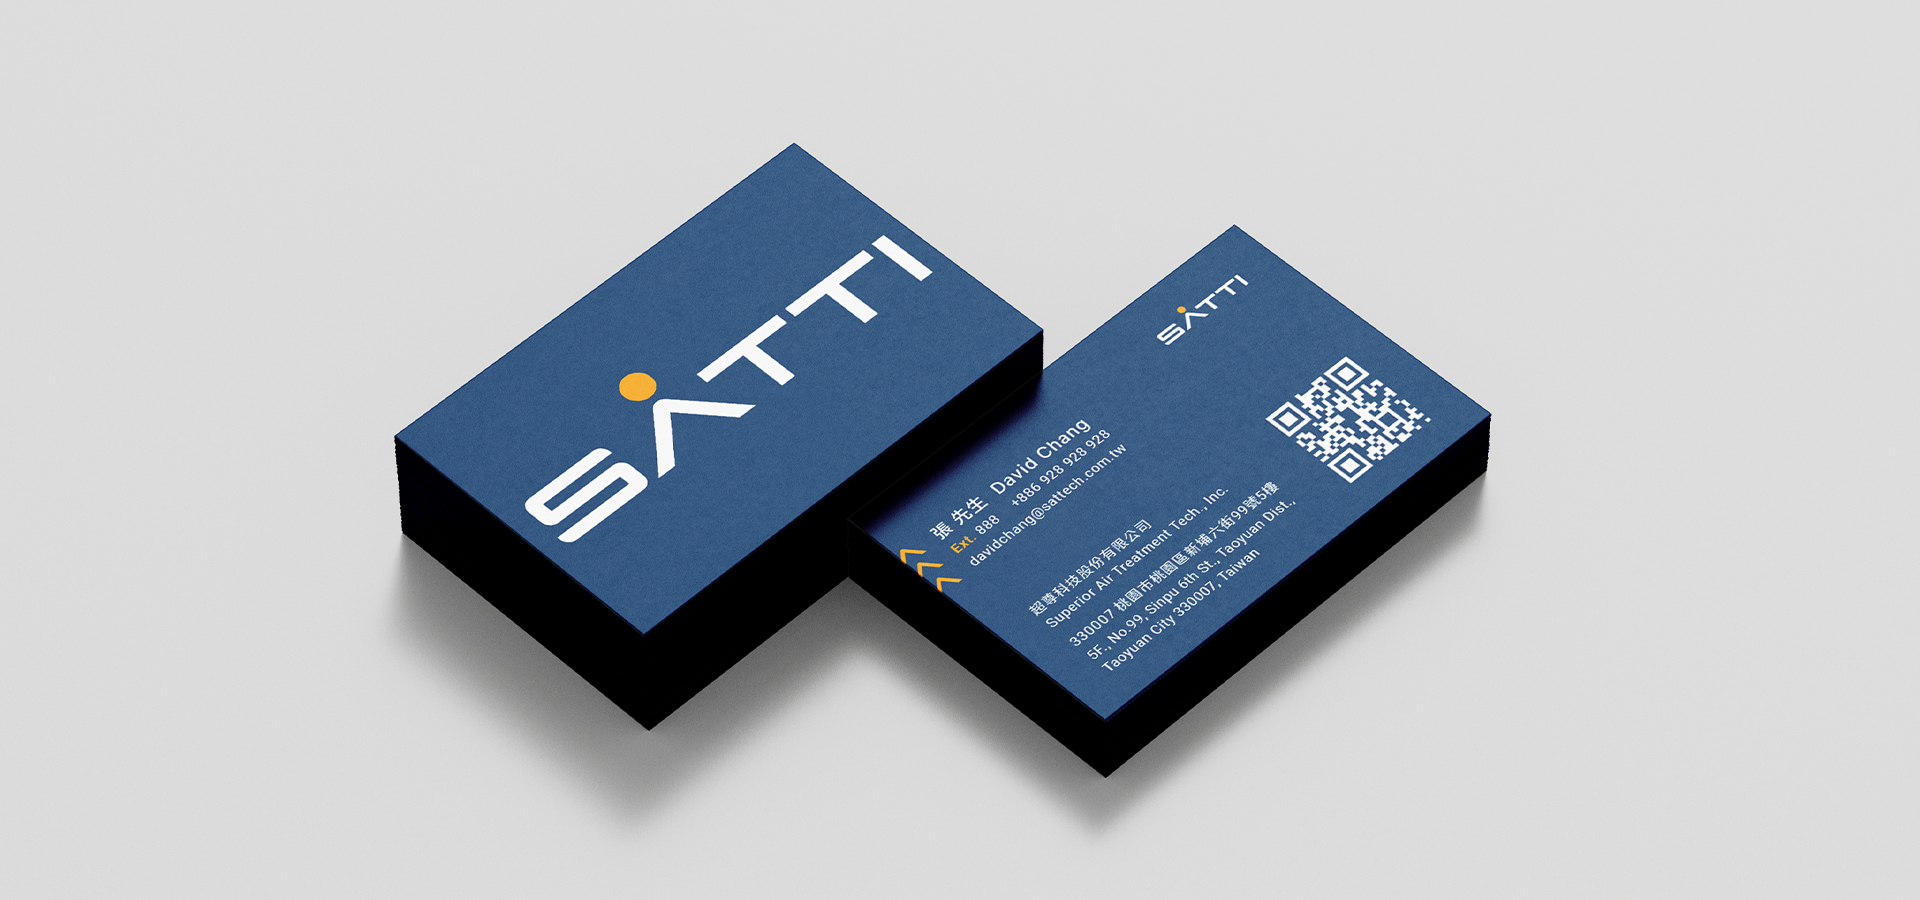 SATTI slide02 | 超尊科技品牌再造專案 | Labsology 法博思品牌顧問公司